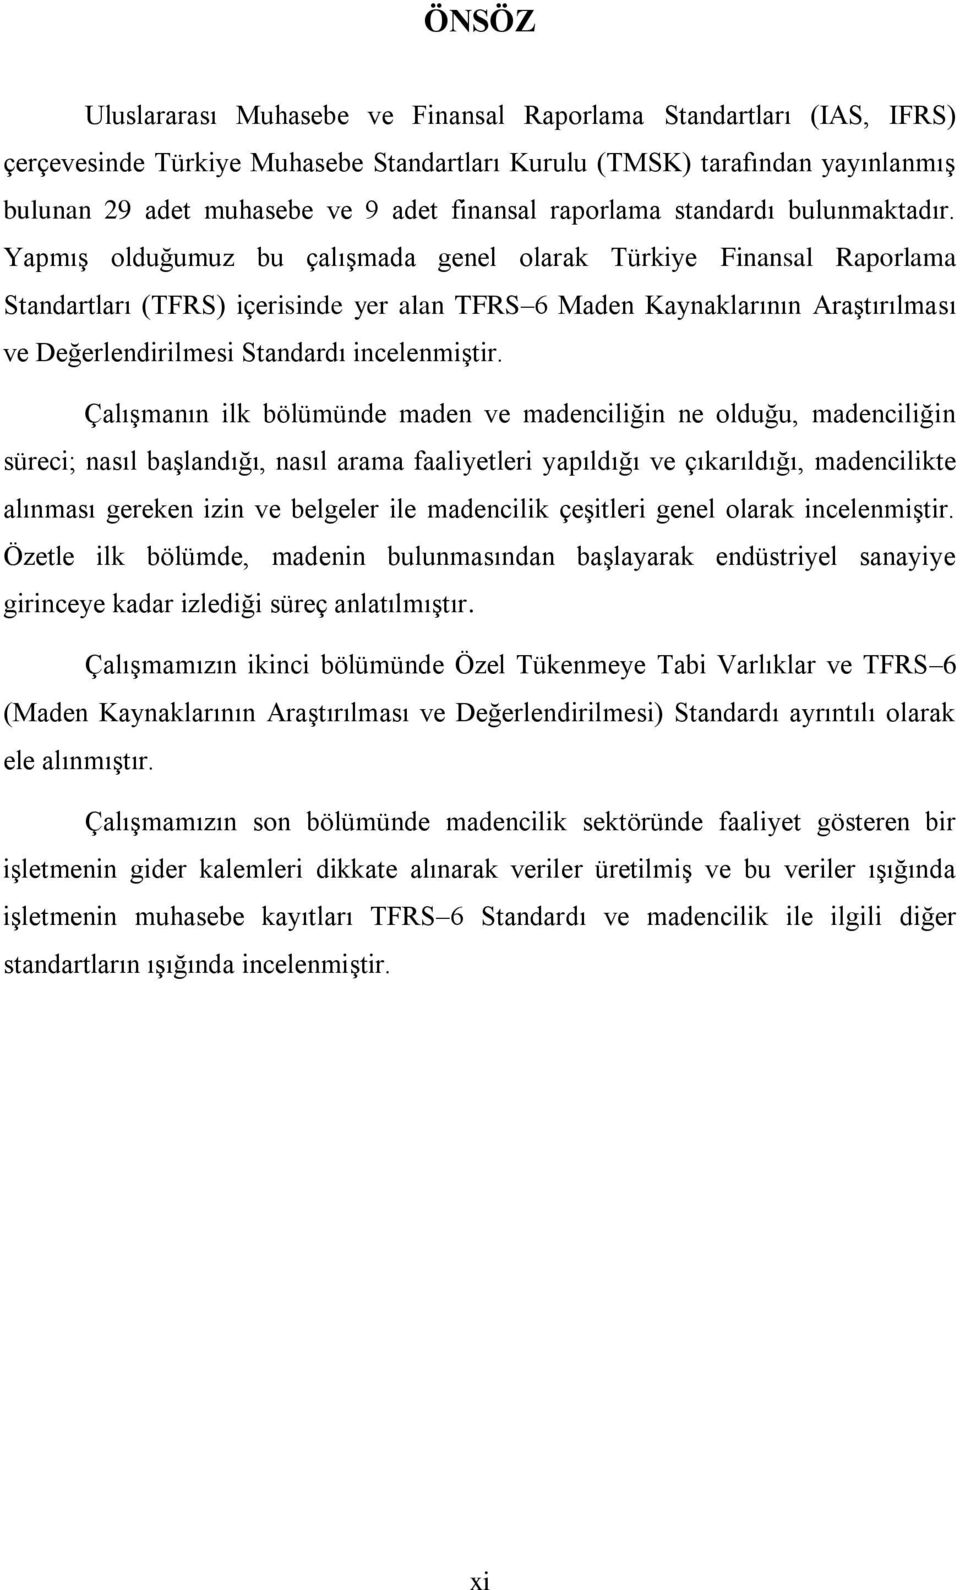 YapmıĢ olduğumuz bu çalıģmada genel olarak Türkiye Finansal Raporlama Standartları (TFRS) içerisinde yer alan TFRS 6 Maden Kaynaklarının AraĢtırılması ve Değerlendirilmesi Standardı incelenmiģtir.